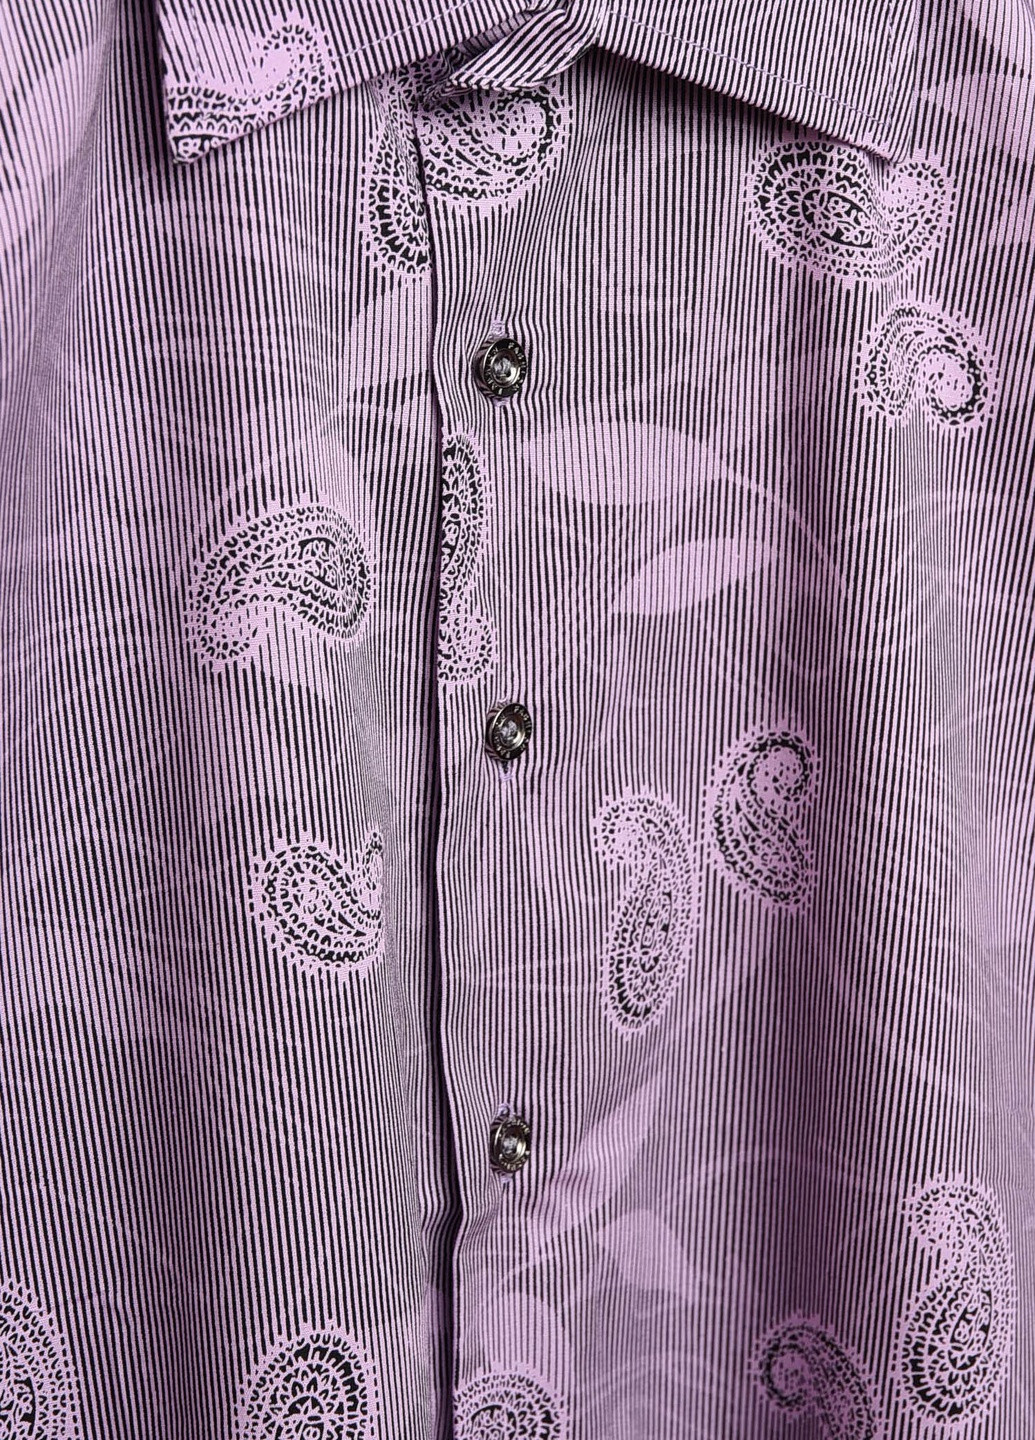 Фиолетовая кэжуал рубашка с рисунком Let's Shop